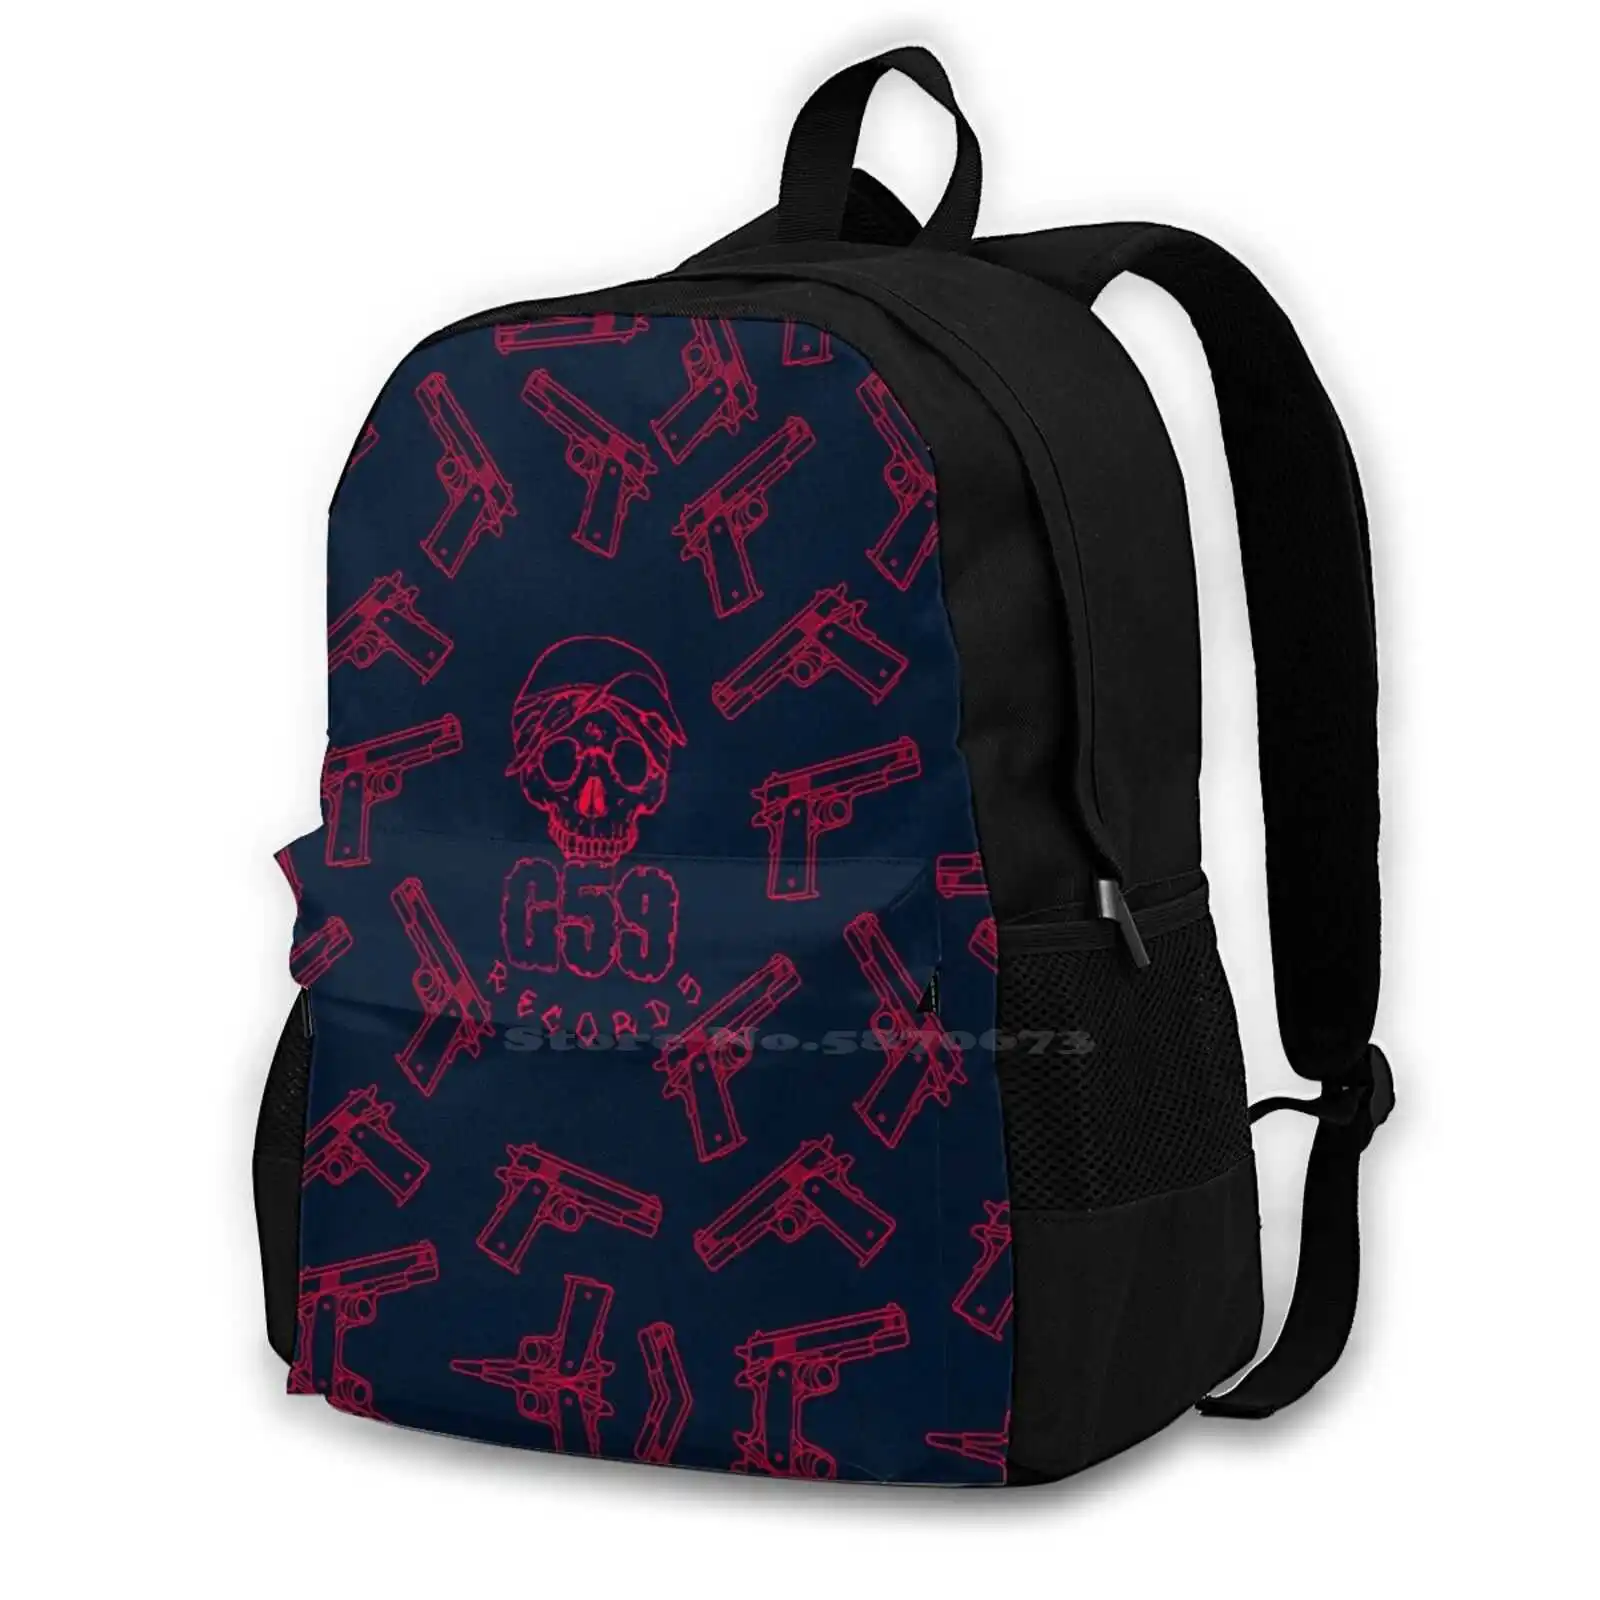 Фото G59 модные сумки дорожный рюкзак для ноутбука Рамирес Герм Тревис скетм рубин